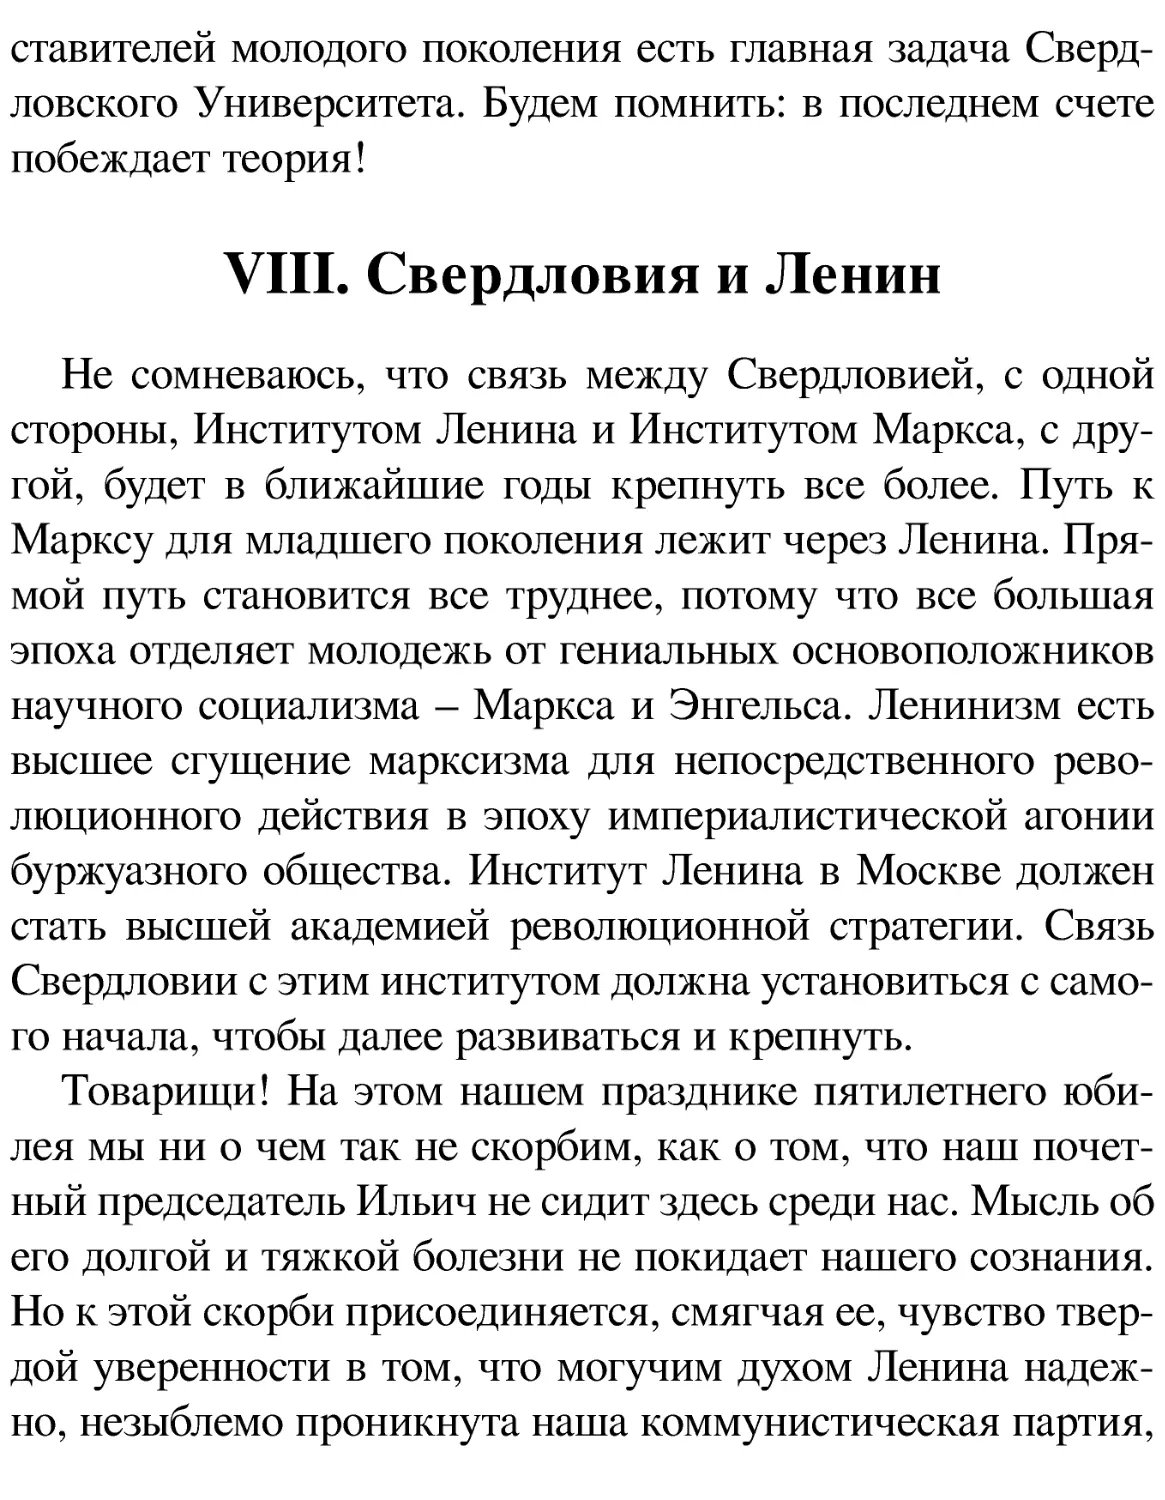 VIII. Свердловия и Ленин